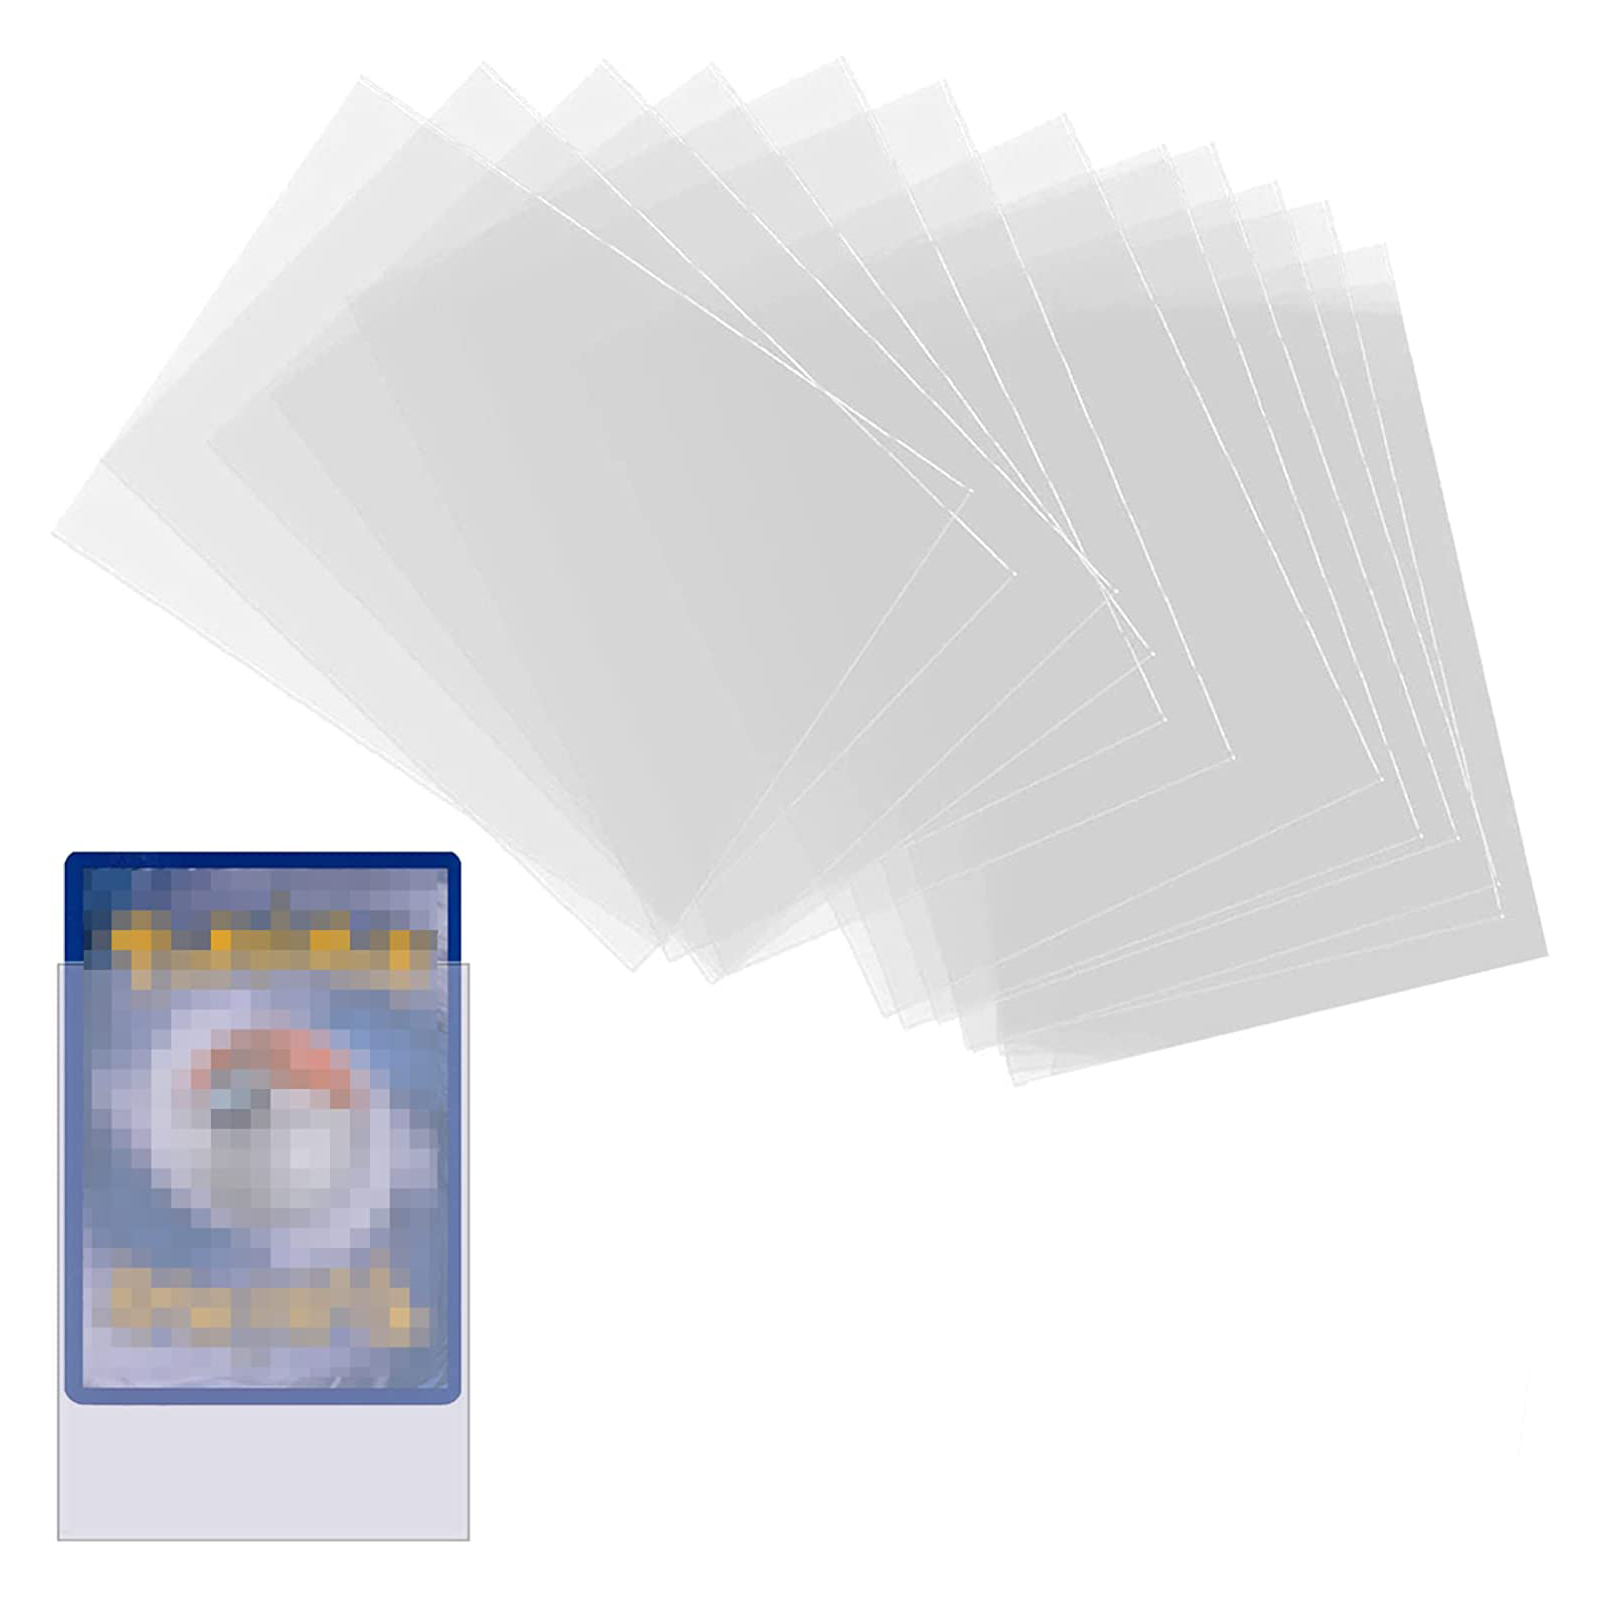 125 張透明卡片套兼容標準尺寸棋盤遊戲、MTG Magic The Gather、Pokemon、Lrcana 和集換